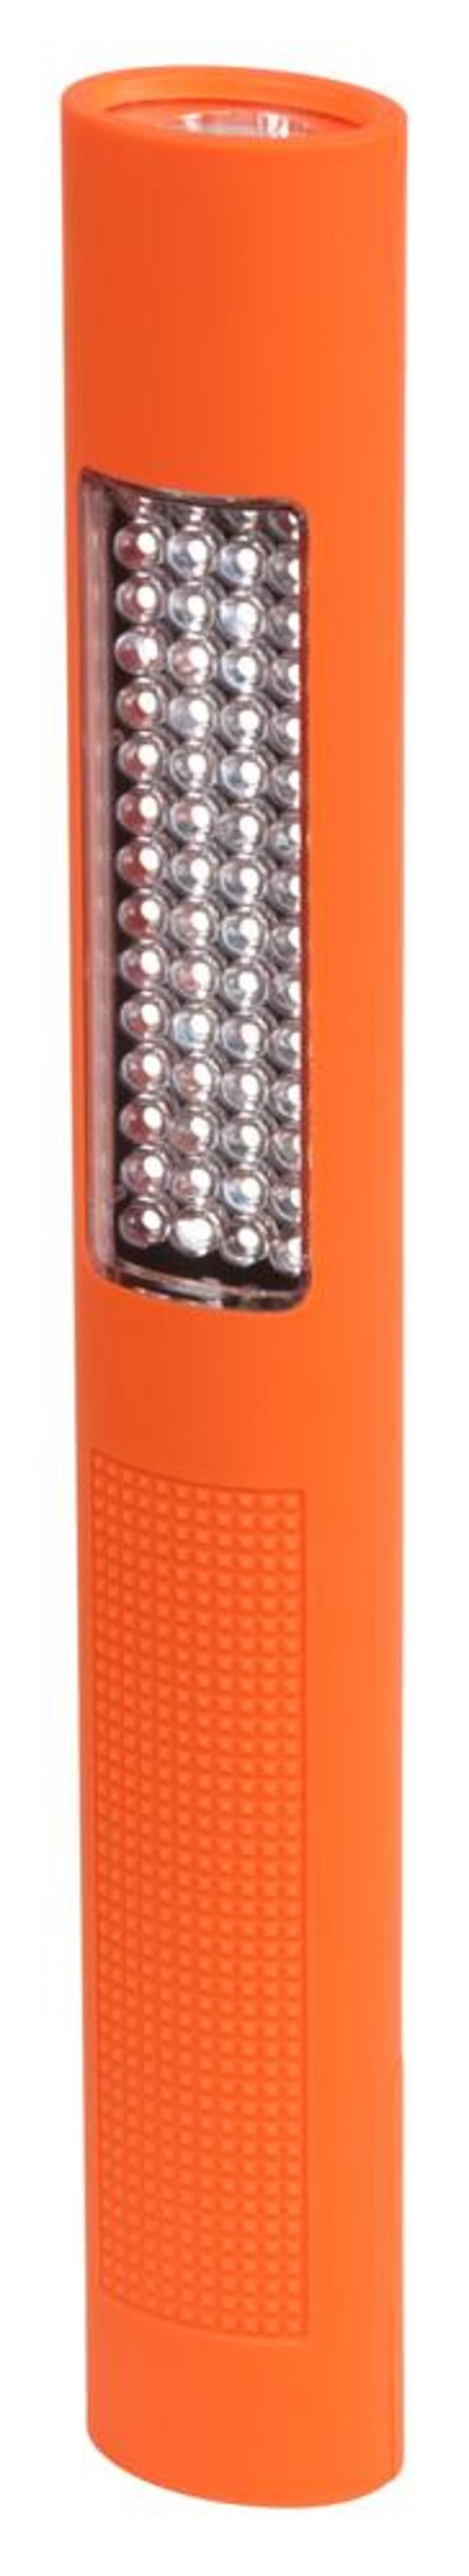 NSP-1260 Multi-Purpose Flashlight and Floodlight - 4 AA NSP-1260